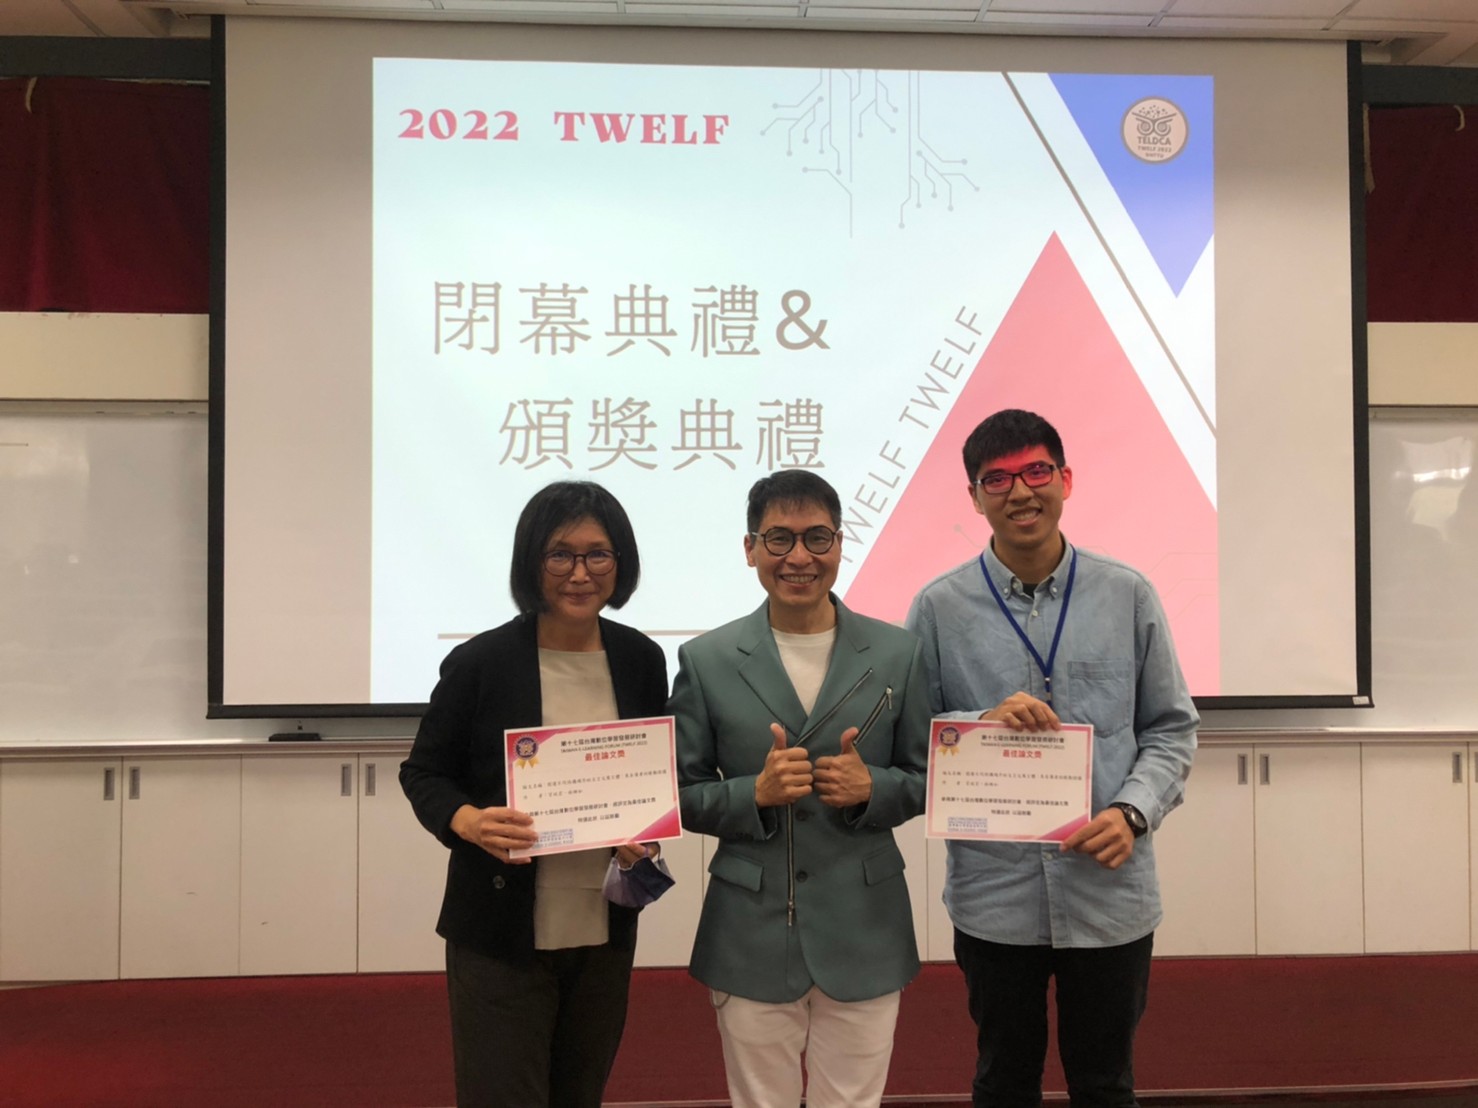 【教育所】本所師生參與第十七屆 台灣數位學習發展研討會(TWELF 2022)